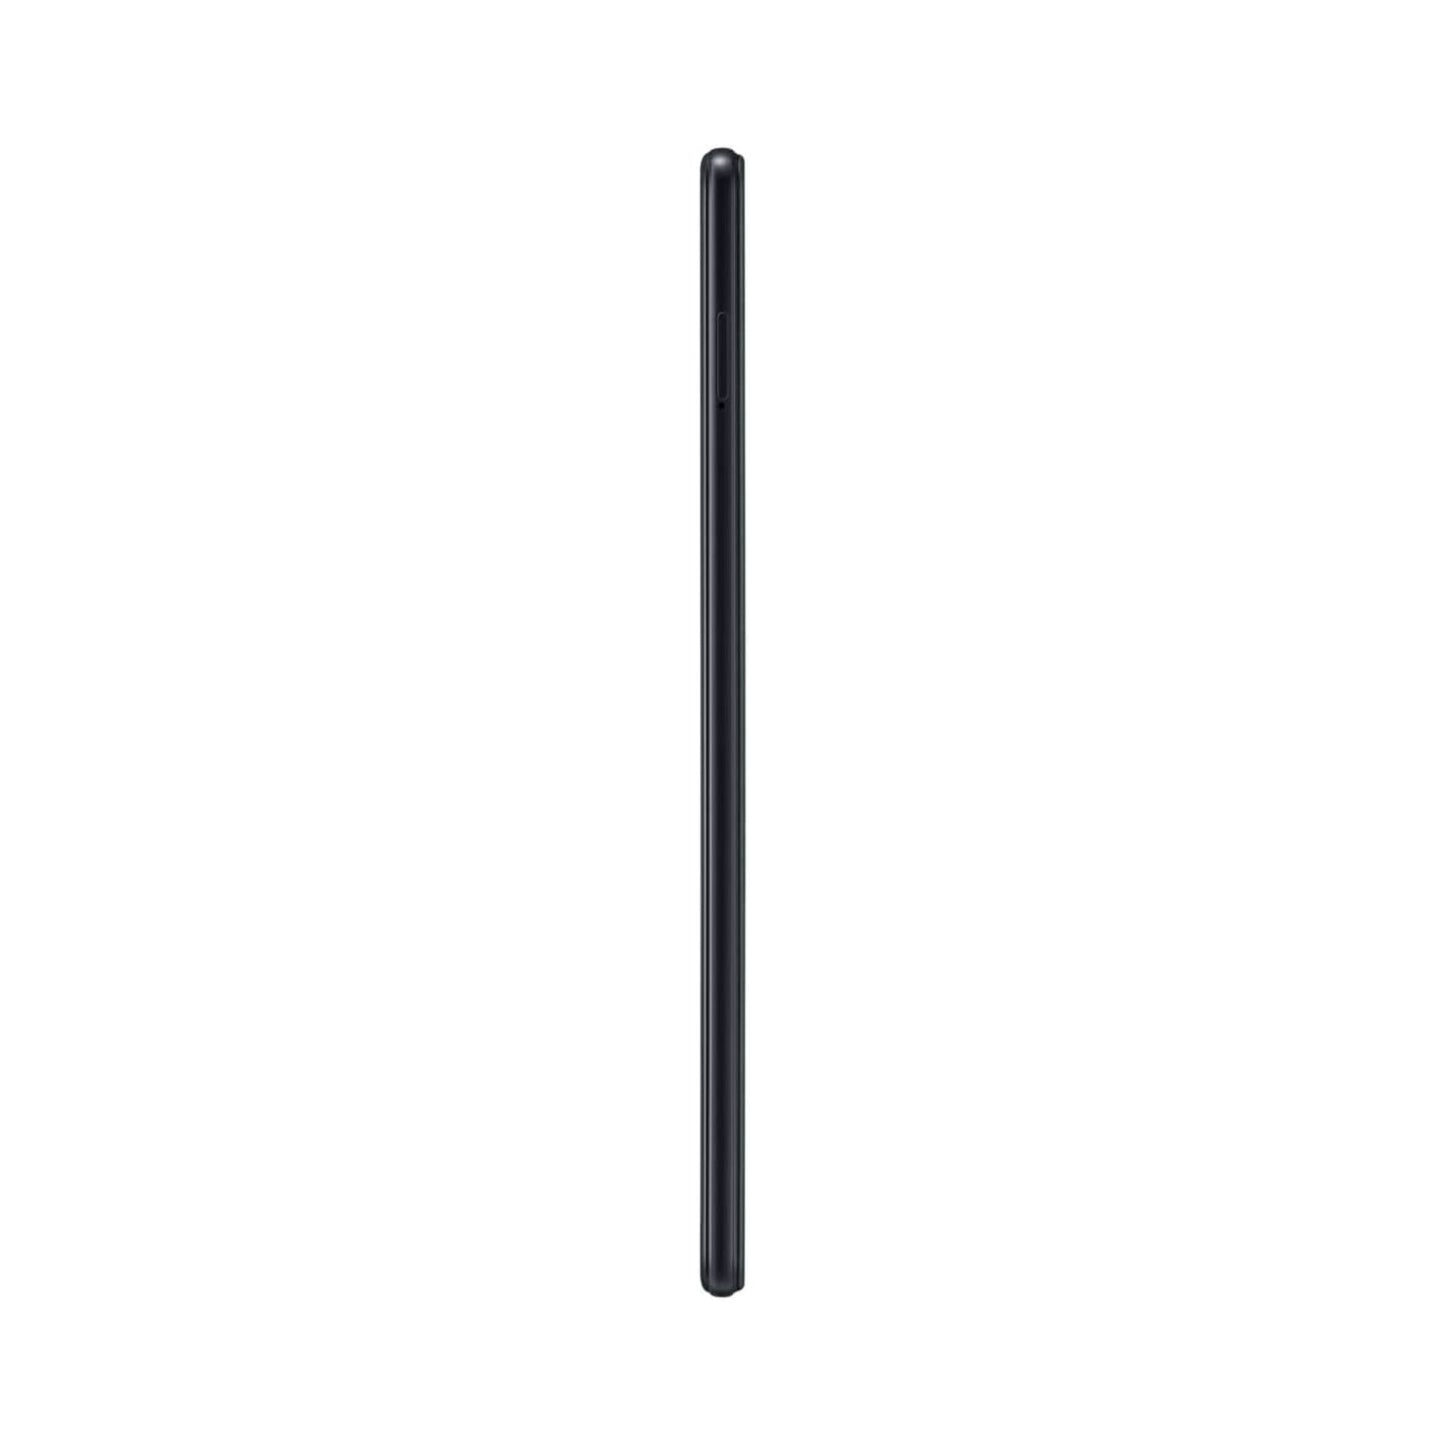 SAMSUNG Galaxy Tab A 8.0 (2019) T295 8inch, 32GB, 2GB RAM, Wi-Fi, 4G LTE, Carbon Black